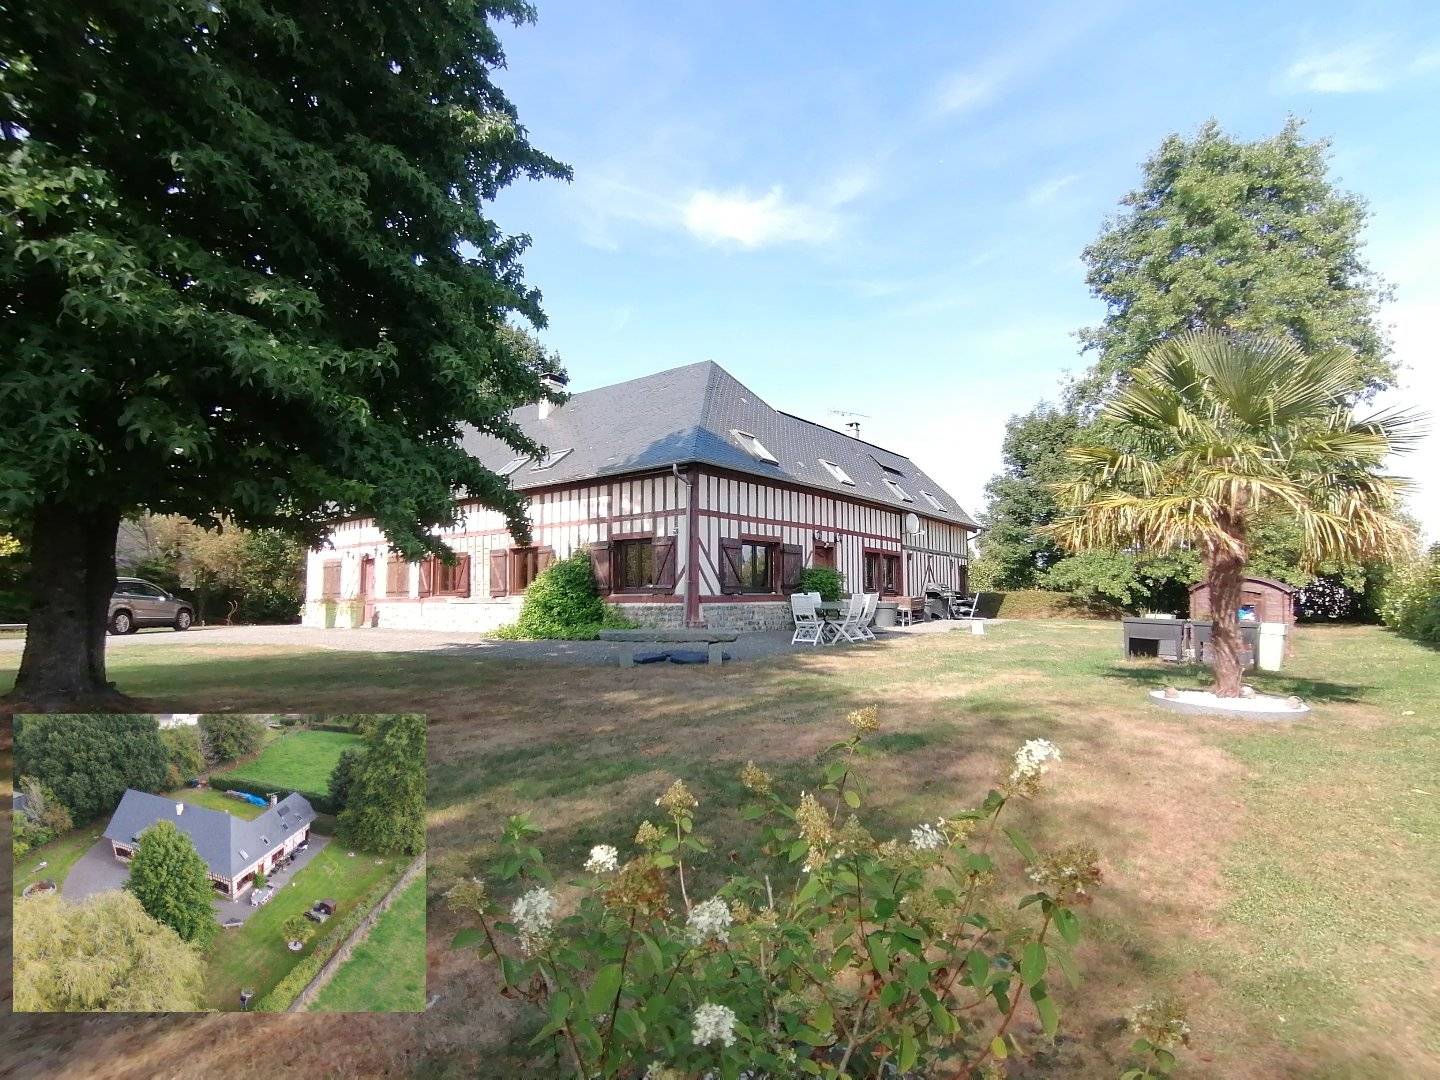  En vente, spacieuse Maison Normande posée sur un terrain arboré de 2 500 m², à 15 min. de Cormeilles 27260